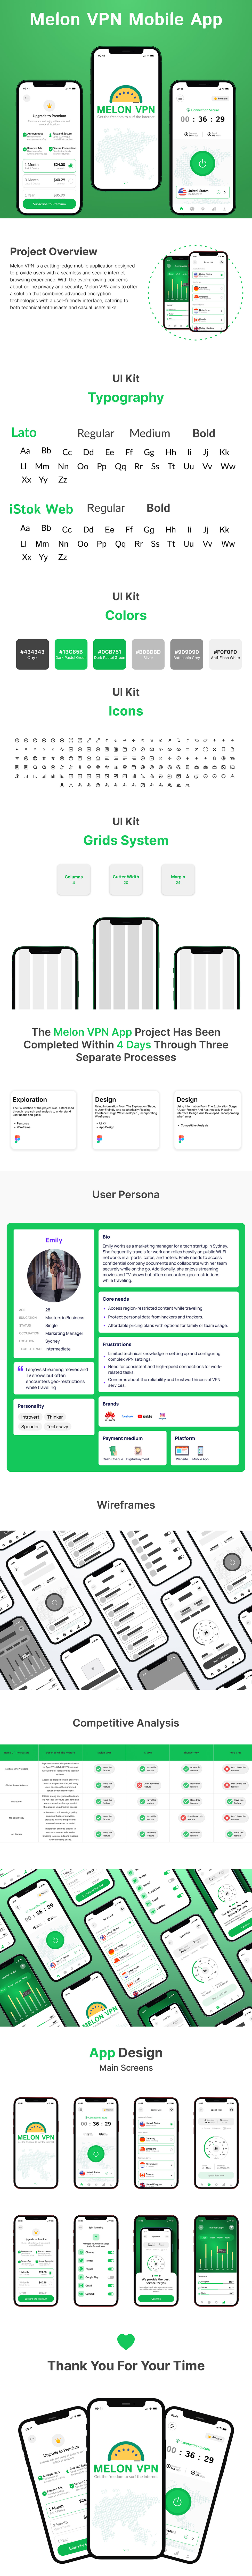 Mobile app vpn application networking social app design UX design Case Study Figma VPN App Design